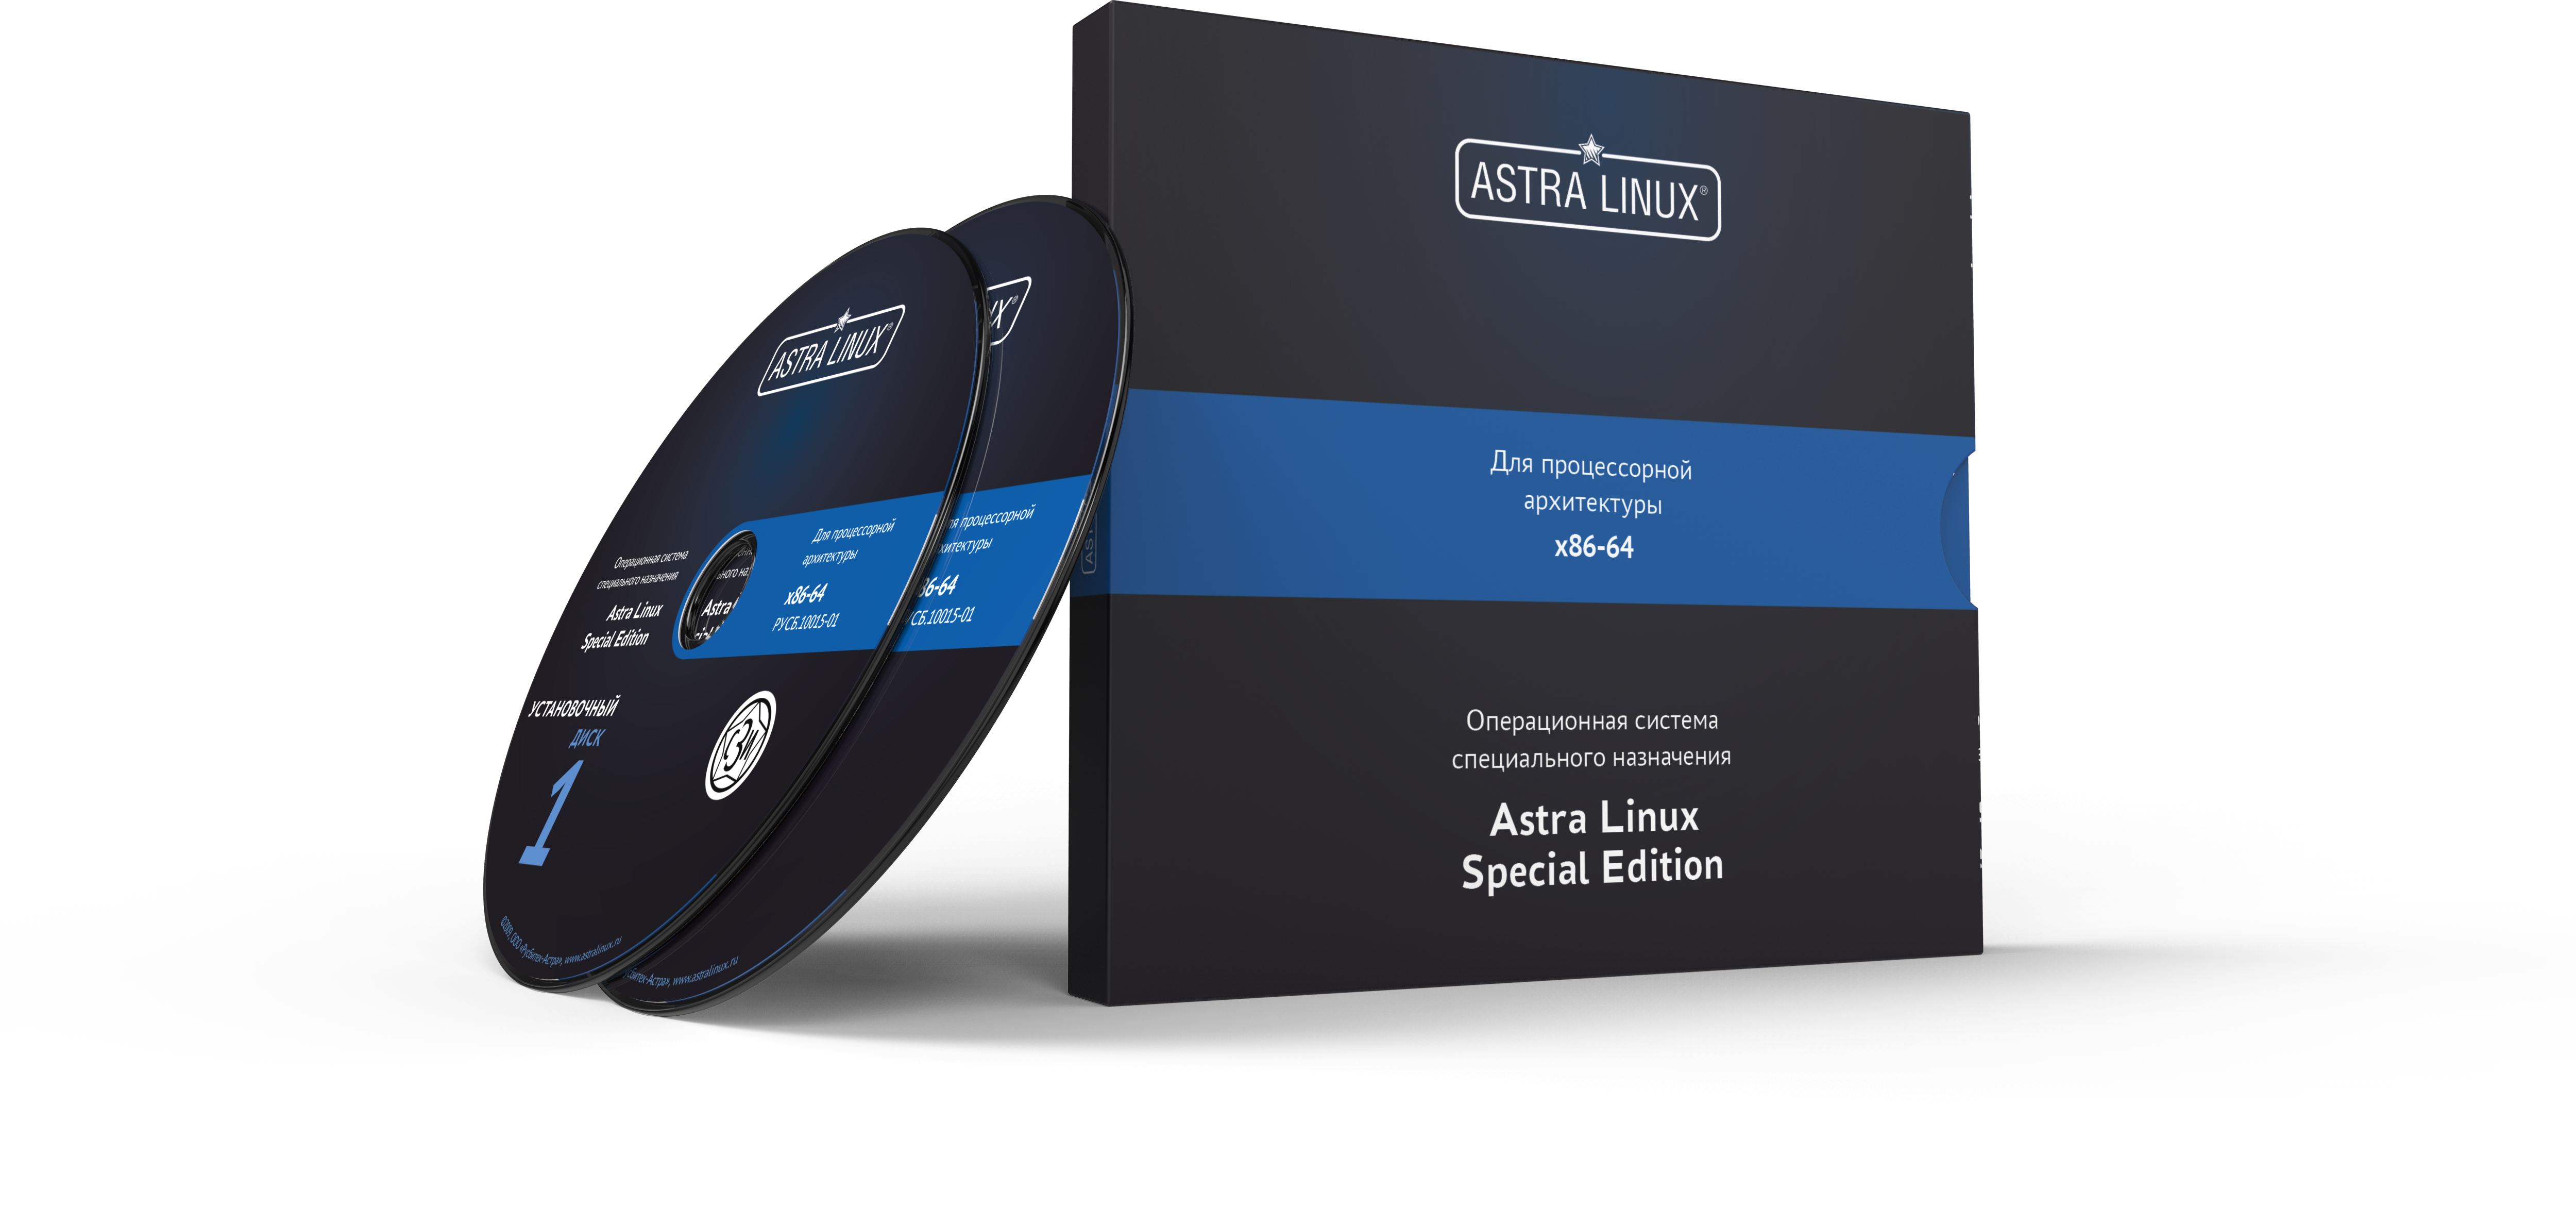 Astra Linux Special Edition 1.7 - Орел, электронный, без огр. срока, ТП "Привилегированная" на 36 мес.